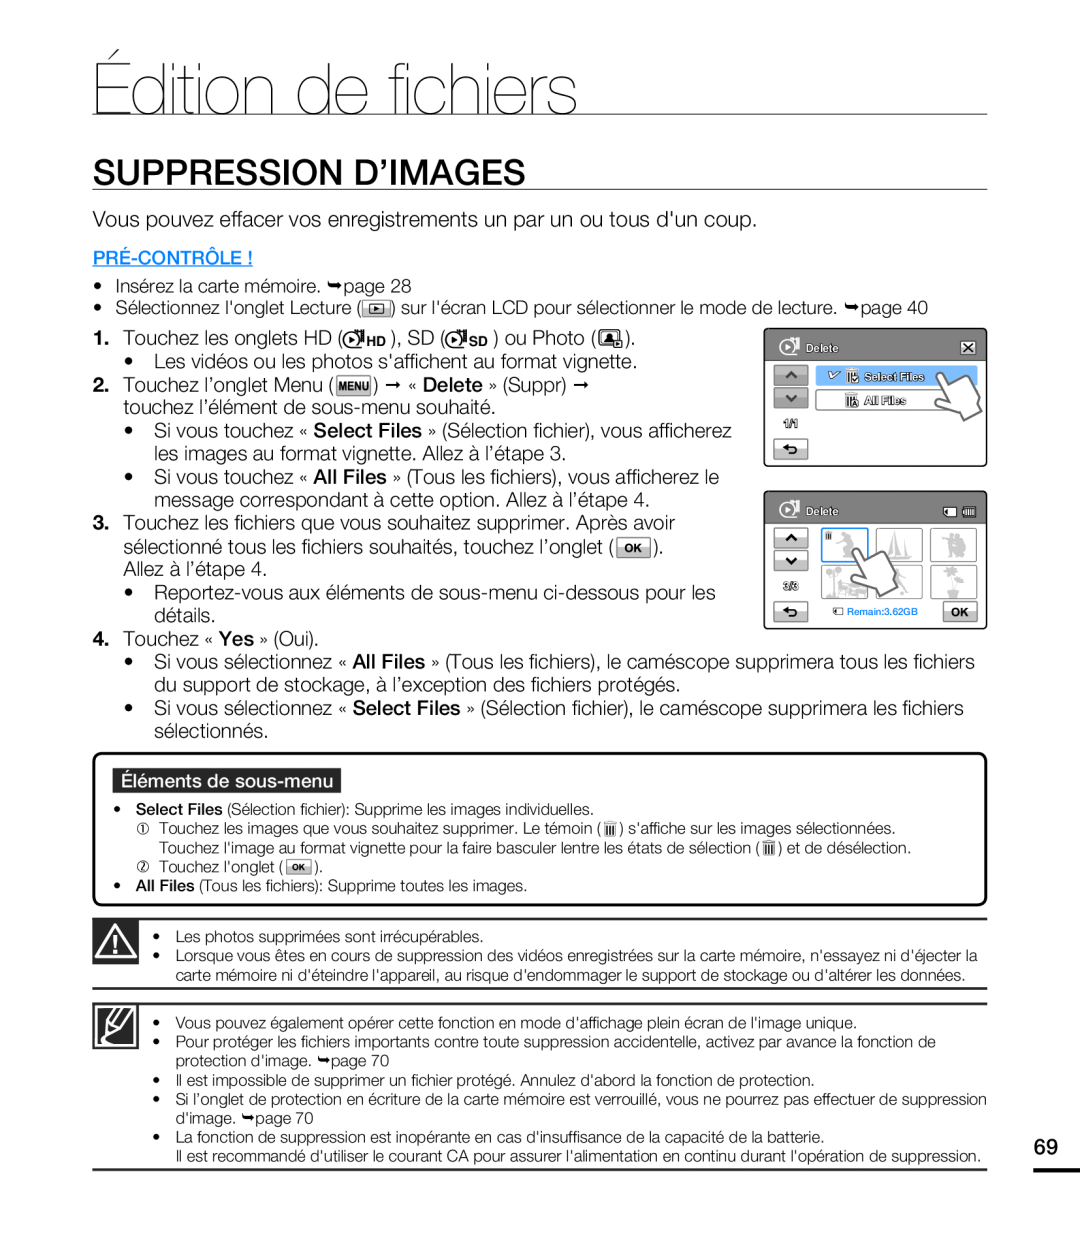 Samsung HMX-T10BP/EDC manual Édition de ﬁ chiers, Suppression D’Images, les images au format vignette. Allez à l’étape 